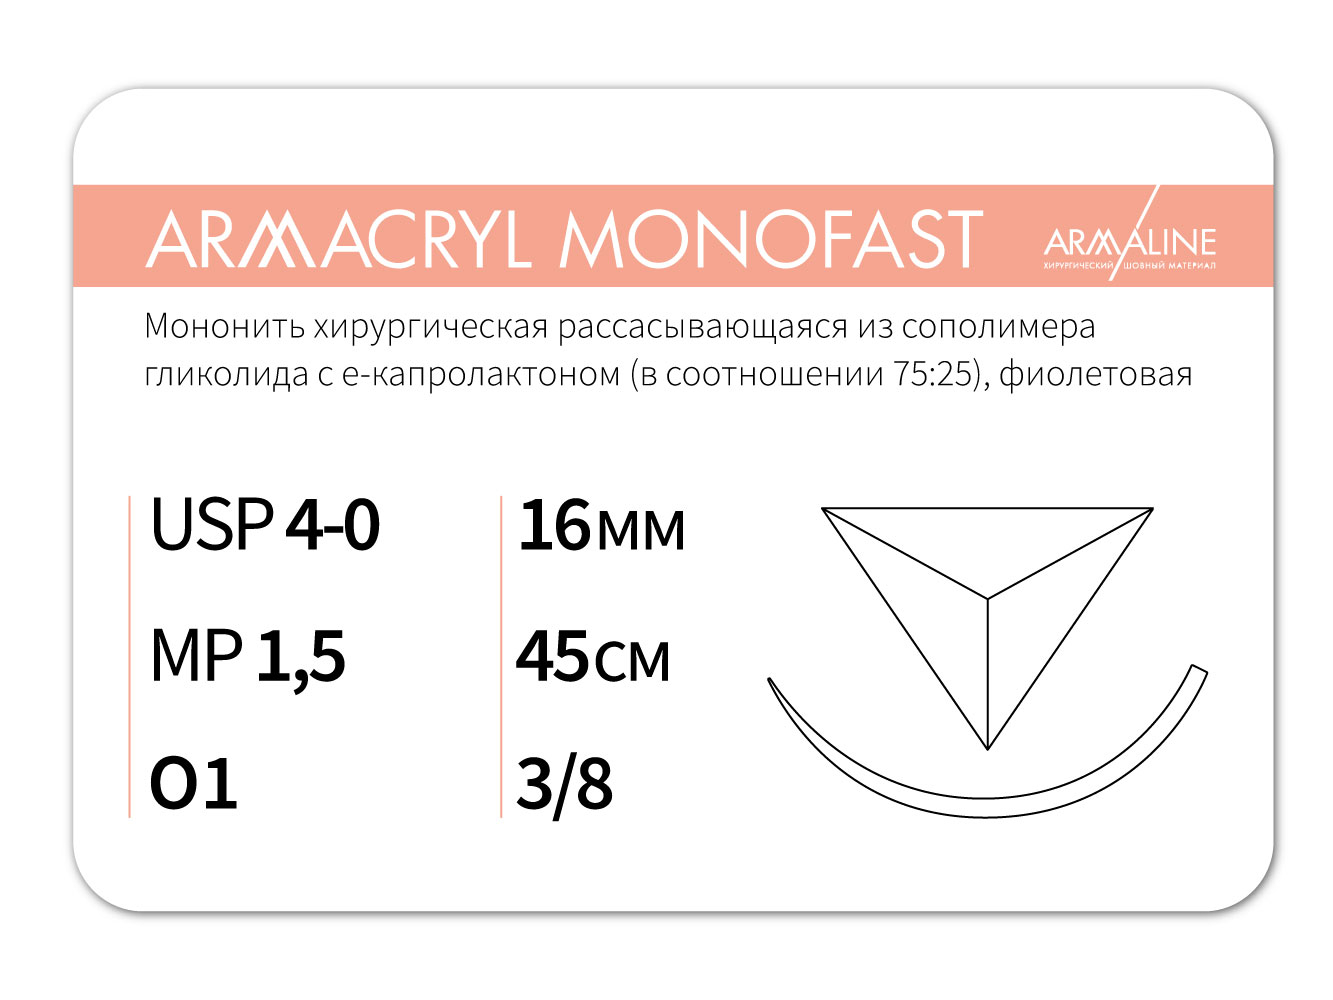 ARMACRYL MONOFAST/Армакрил монофаст (4-0) 45 см - материал хирургический шовный стерильный с атравматической обратно-режущей иглой